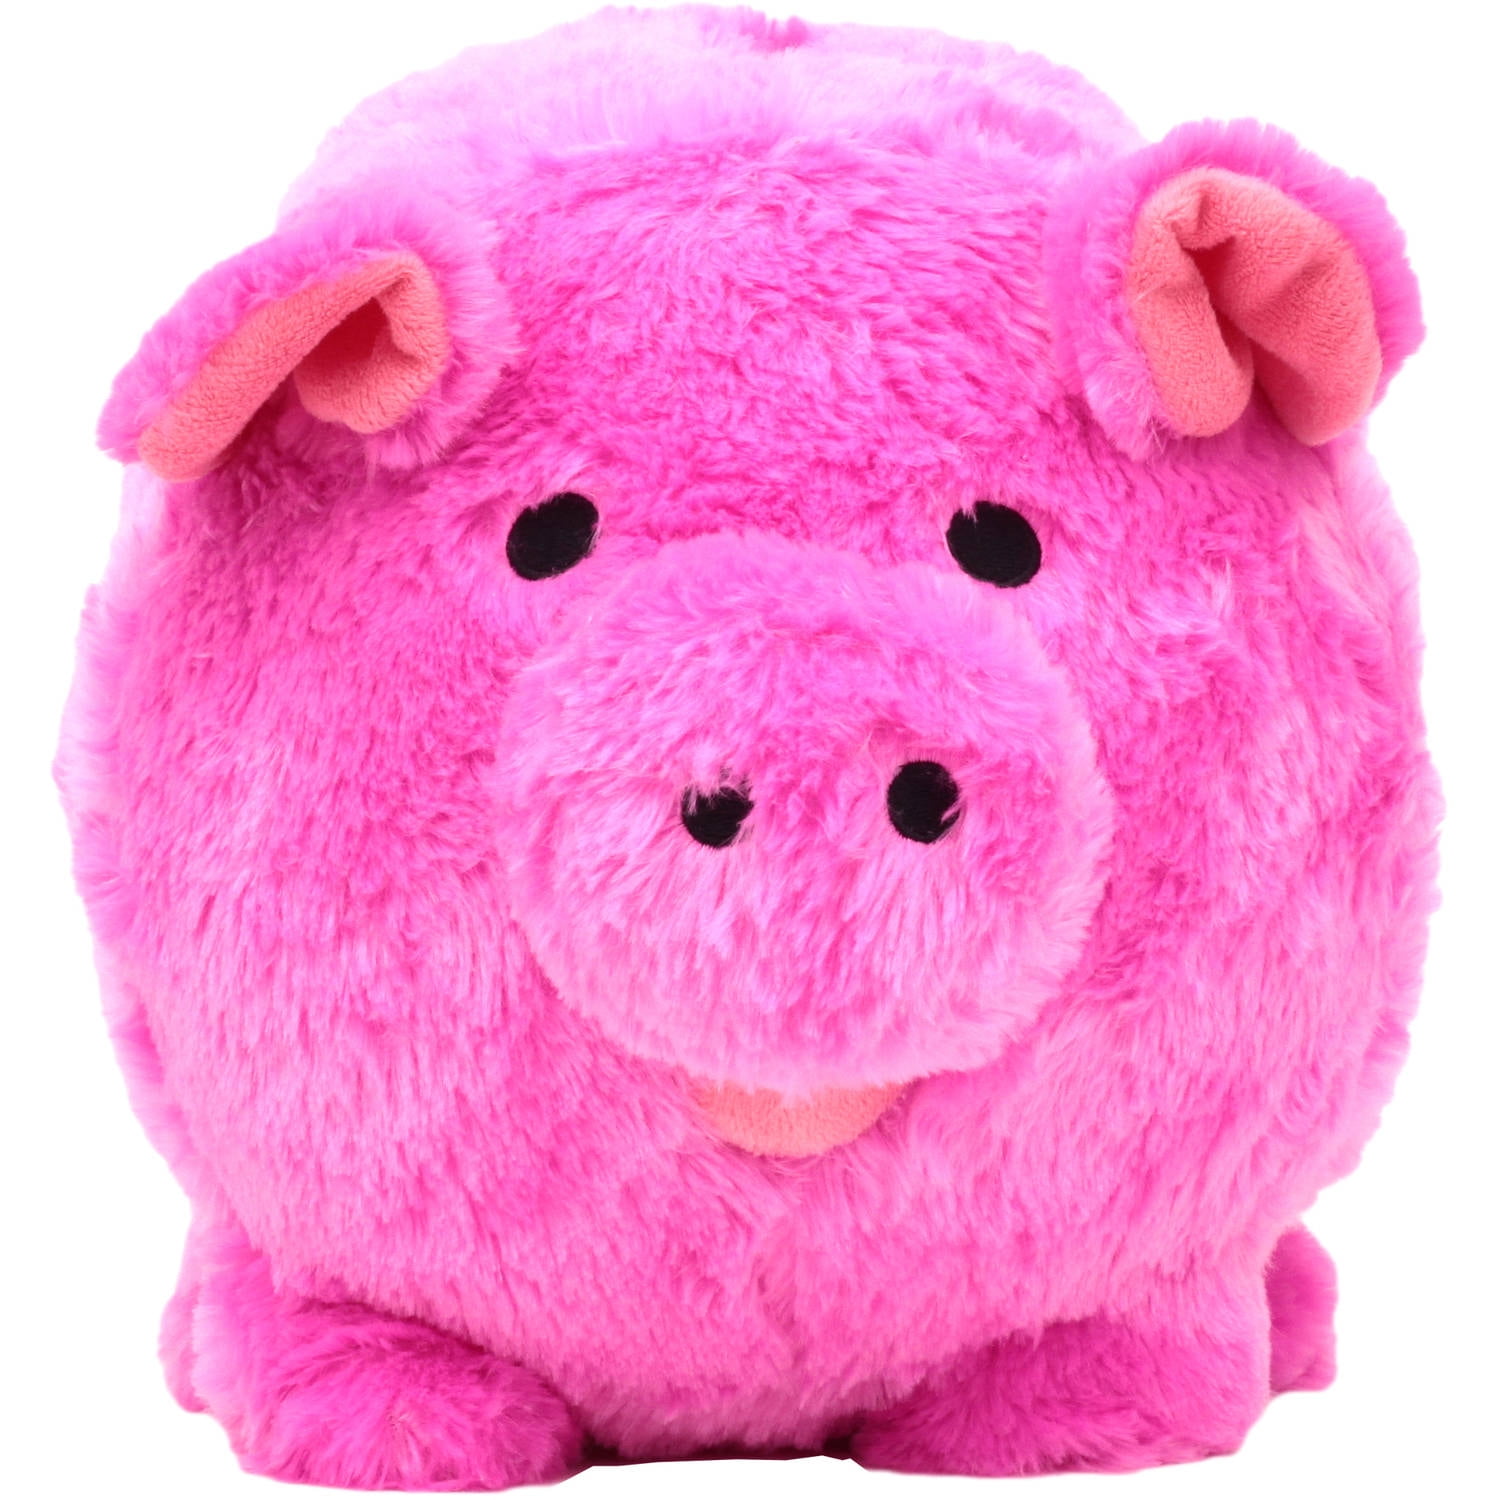 Puzzled Plush Piggy Bank Blue/Pink Elephant L18 